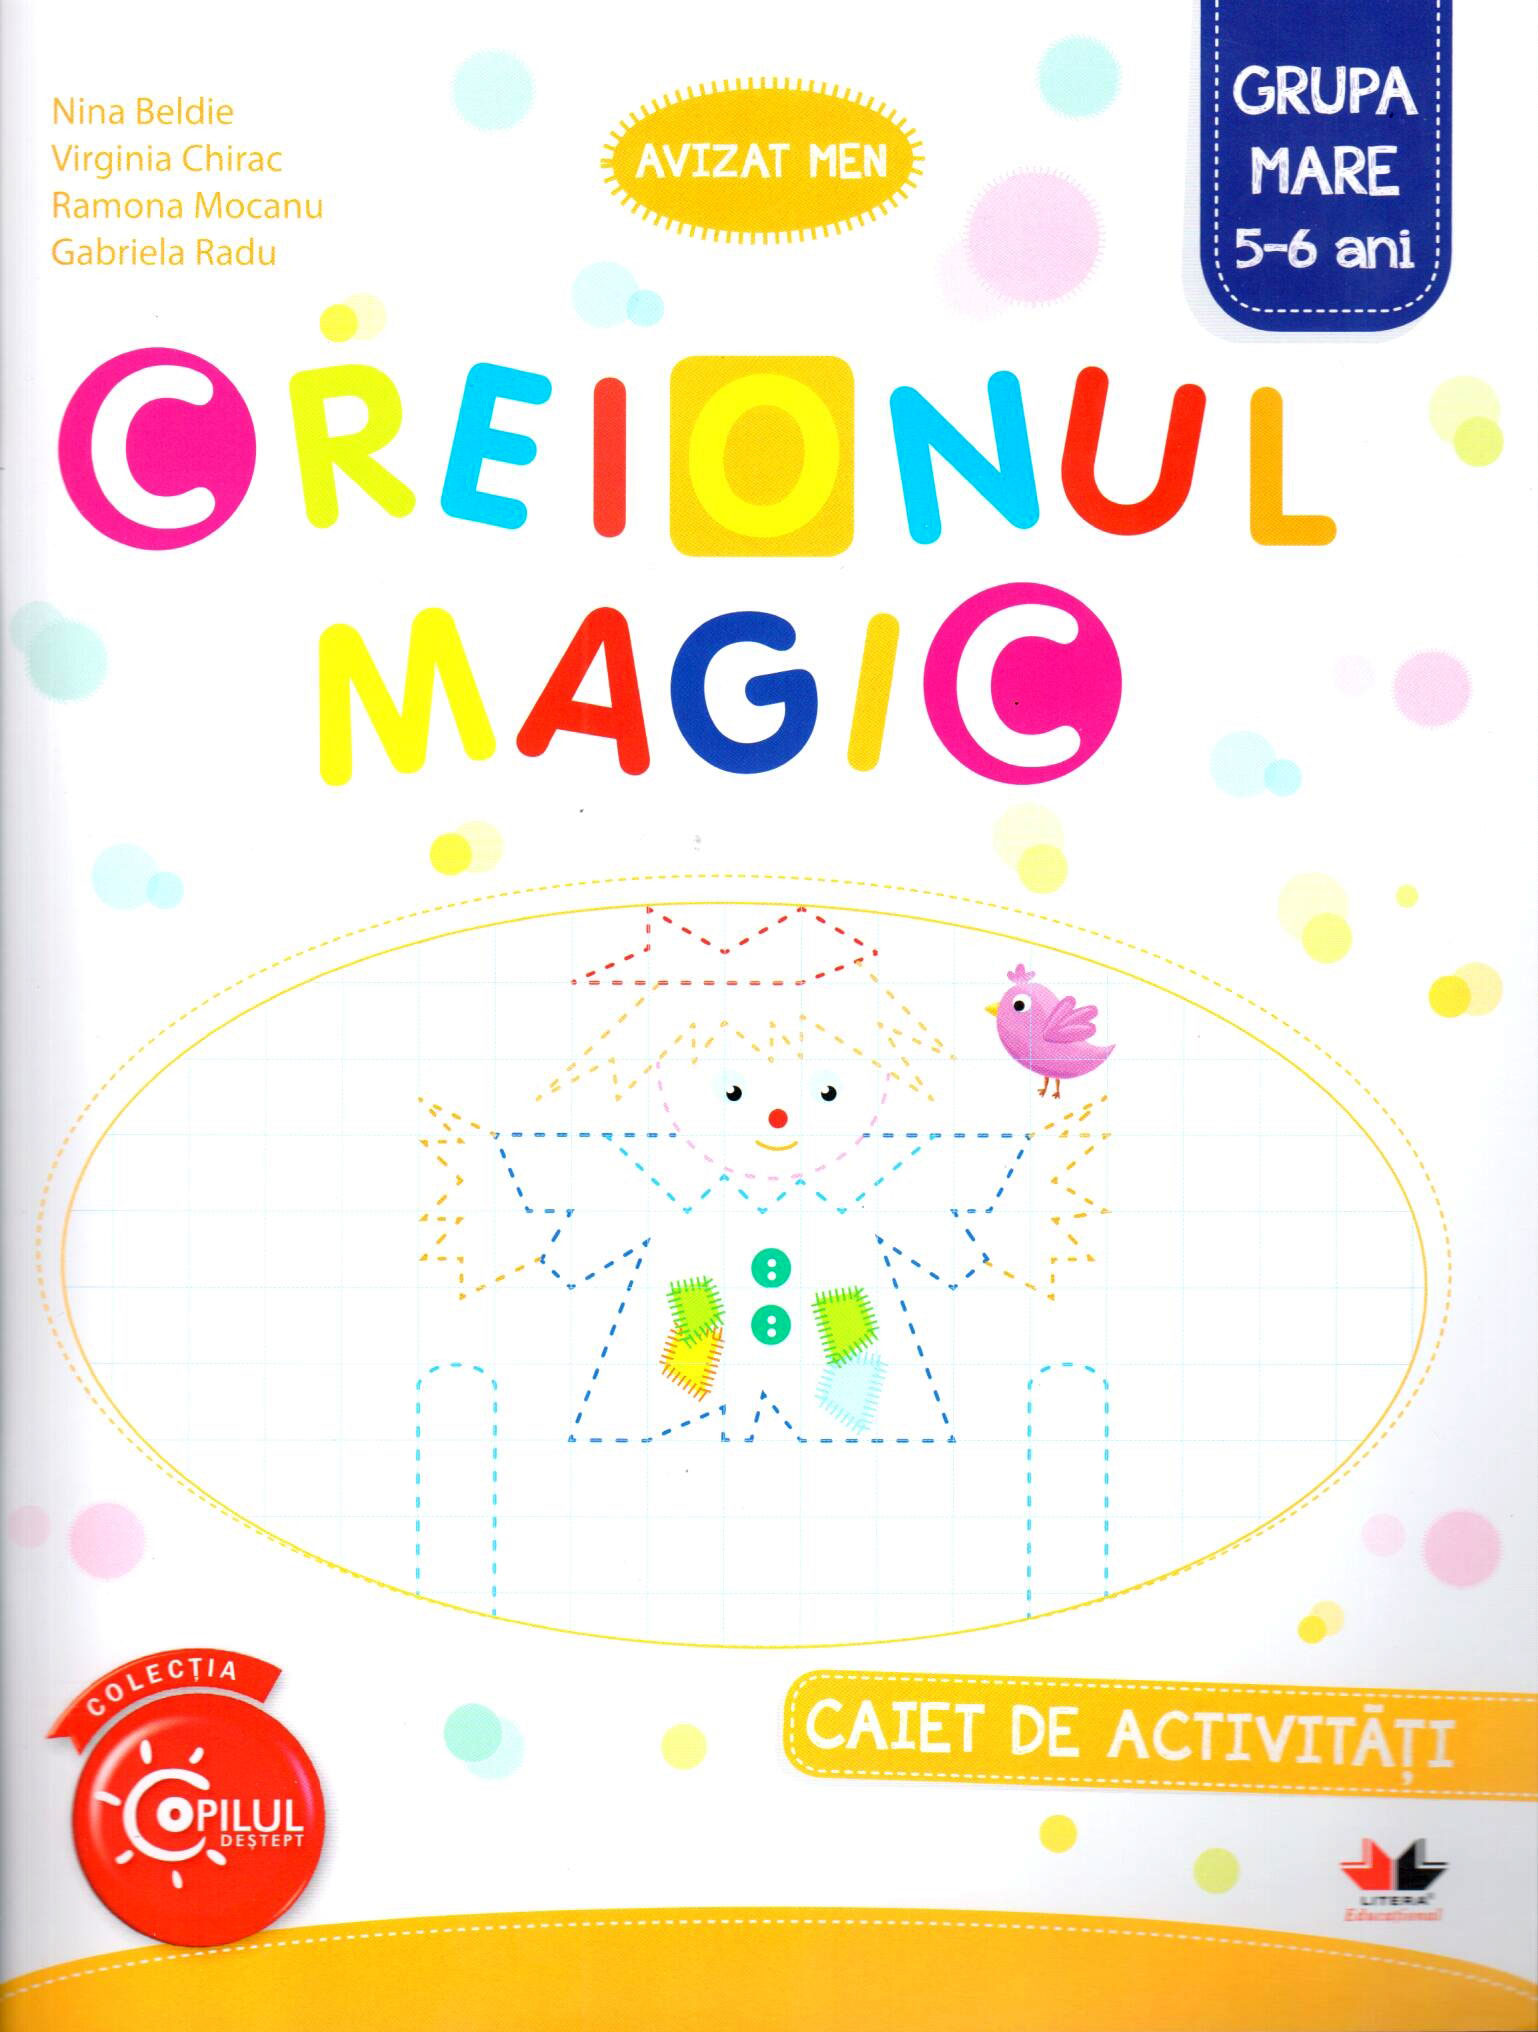 Coperta cărții: Creionul magic - Caiet de activitati - Grupa mare 5-6 ani - lonnieyoungblood.com